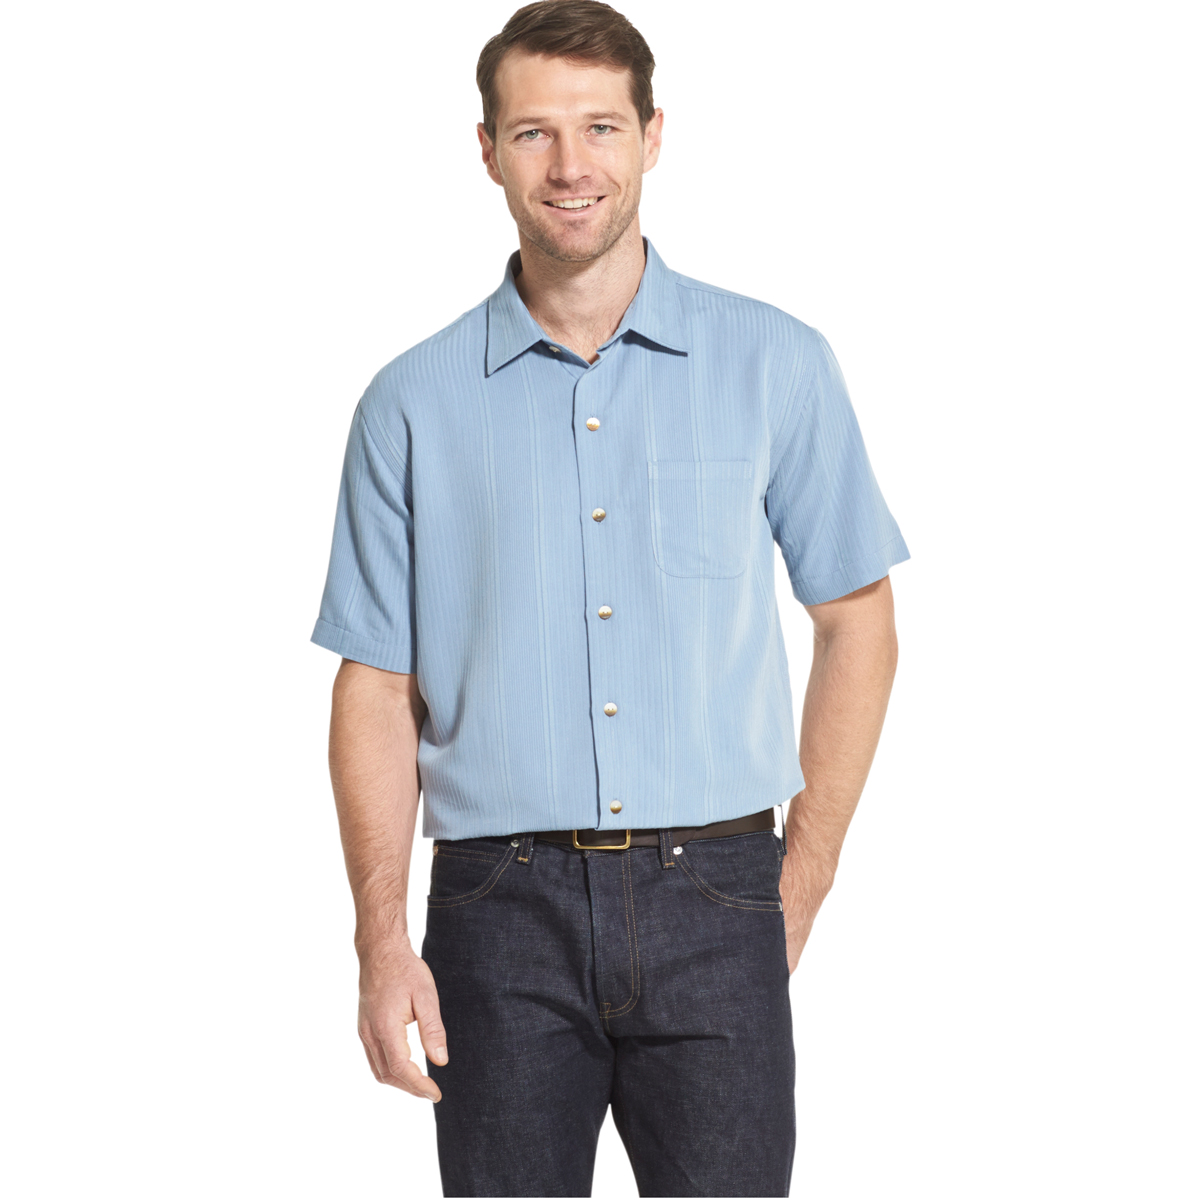 Van Heusen Men's Air Non-Iron Short-Sleeve Shirt - Blue, M